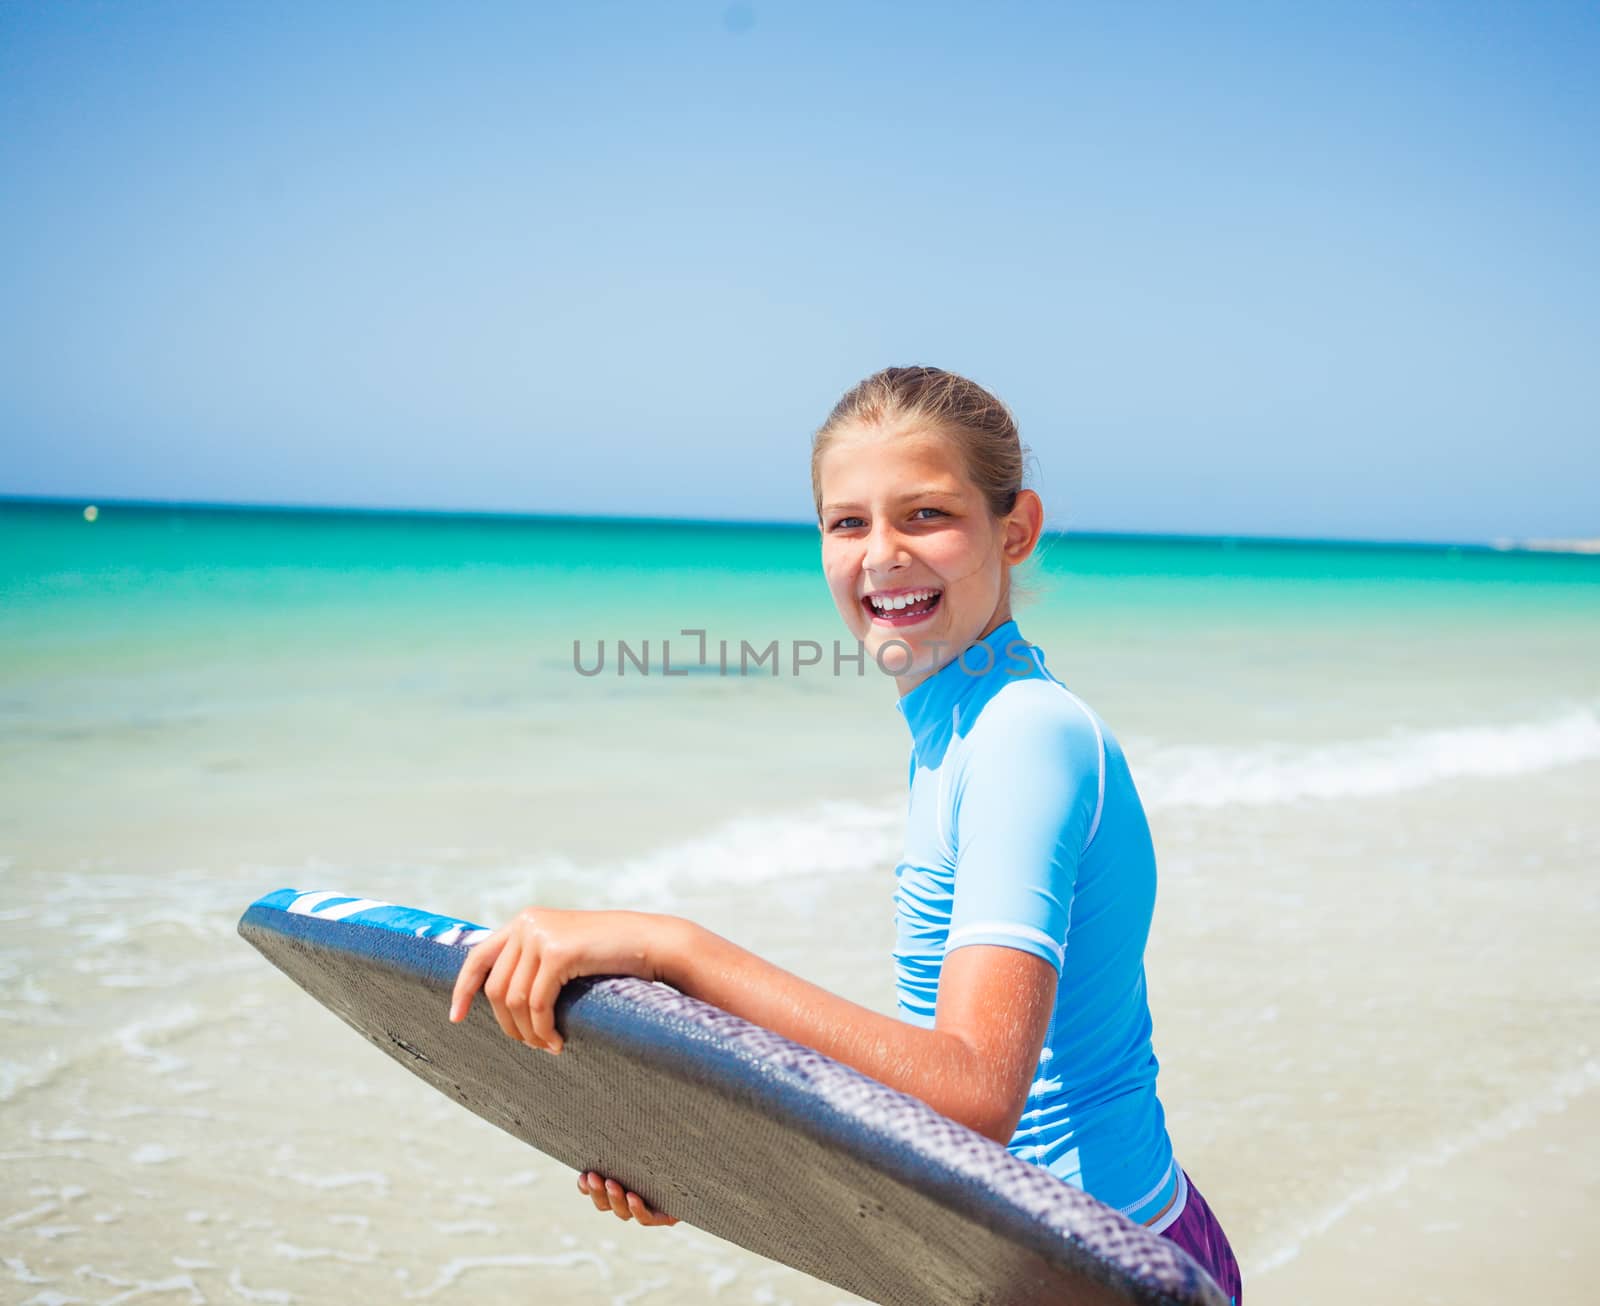 Teenage girl in blue has fun surfing